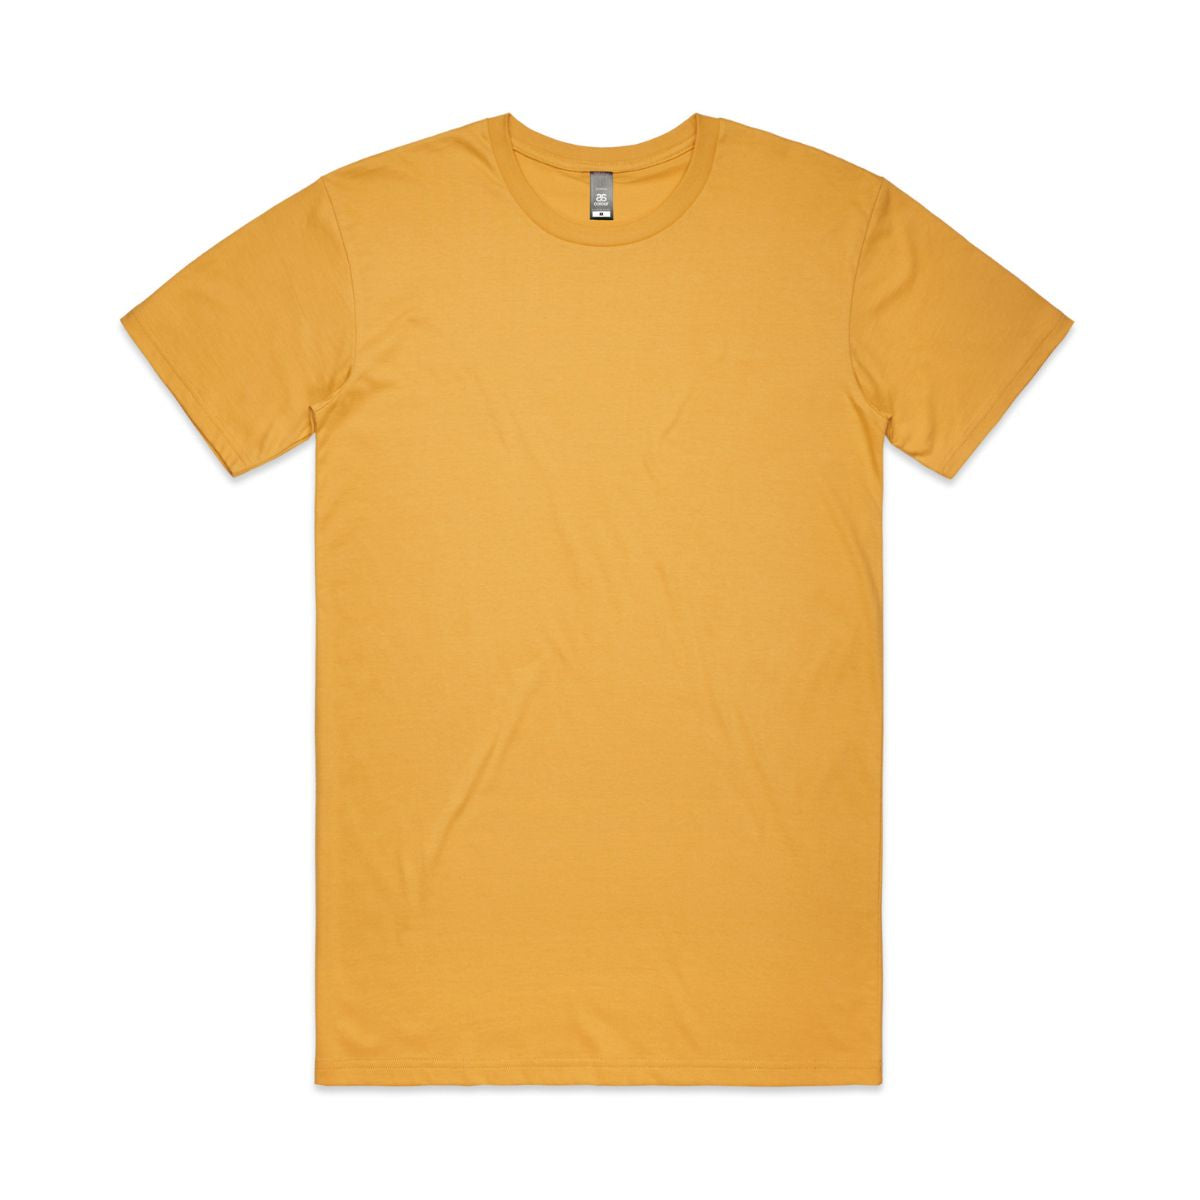 ascolour Men's Staple Tee - Yellow Shades 5001